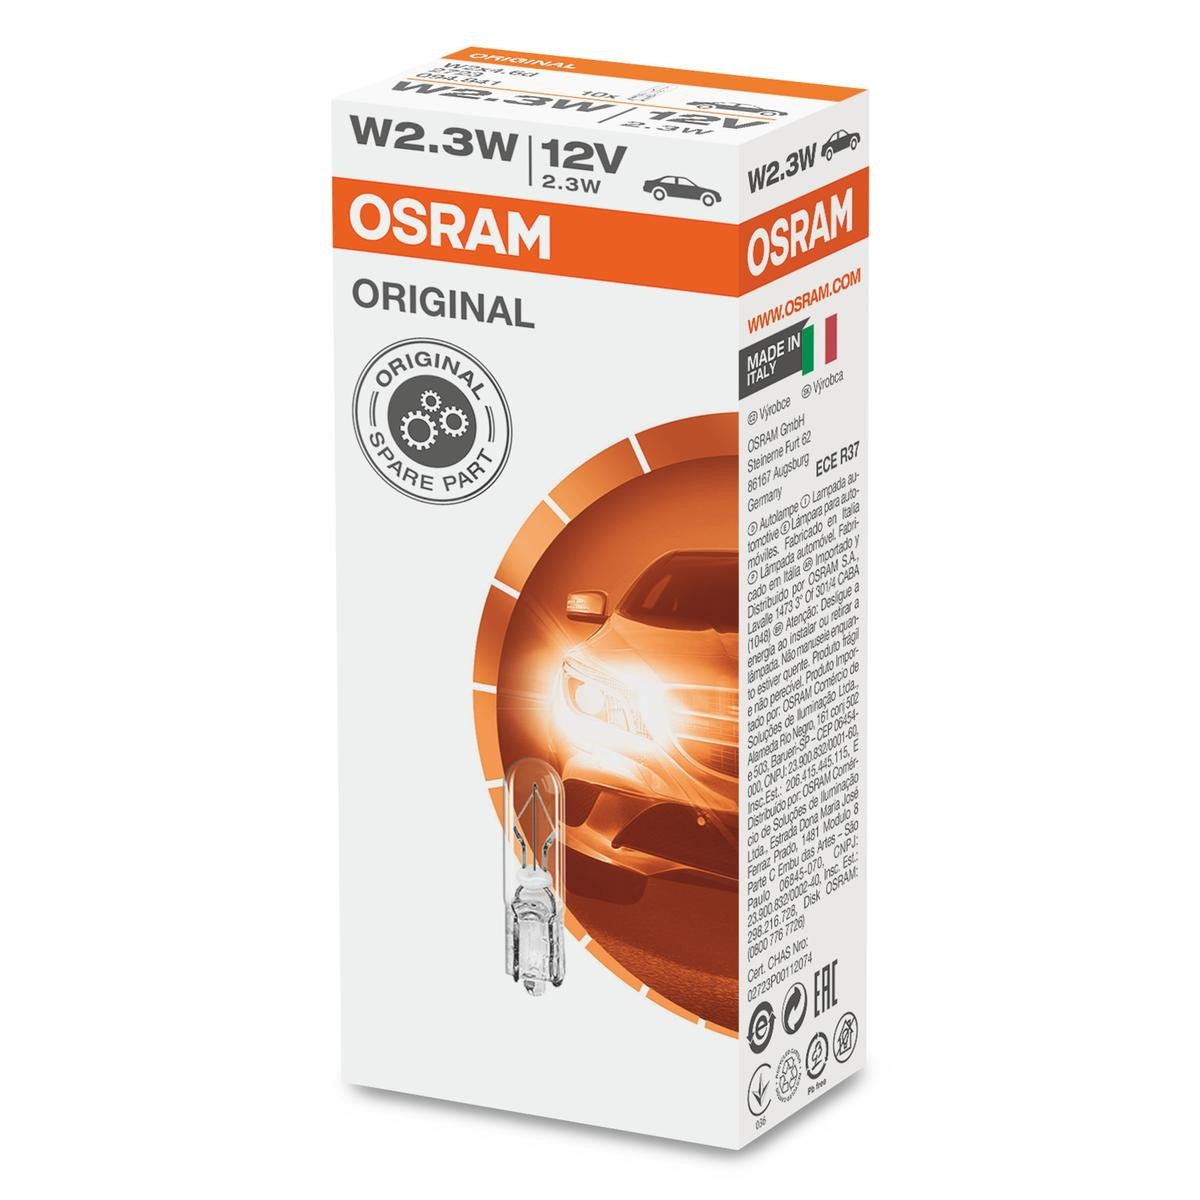 2723 OSRAM ORIGINAL LINE W2,3W Glühlampe 12V 2,3W, W2,3W